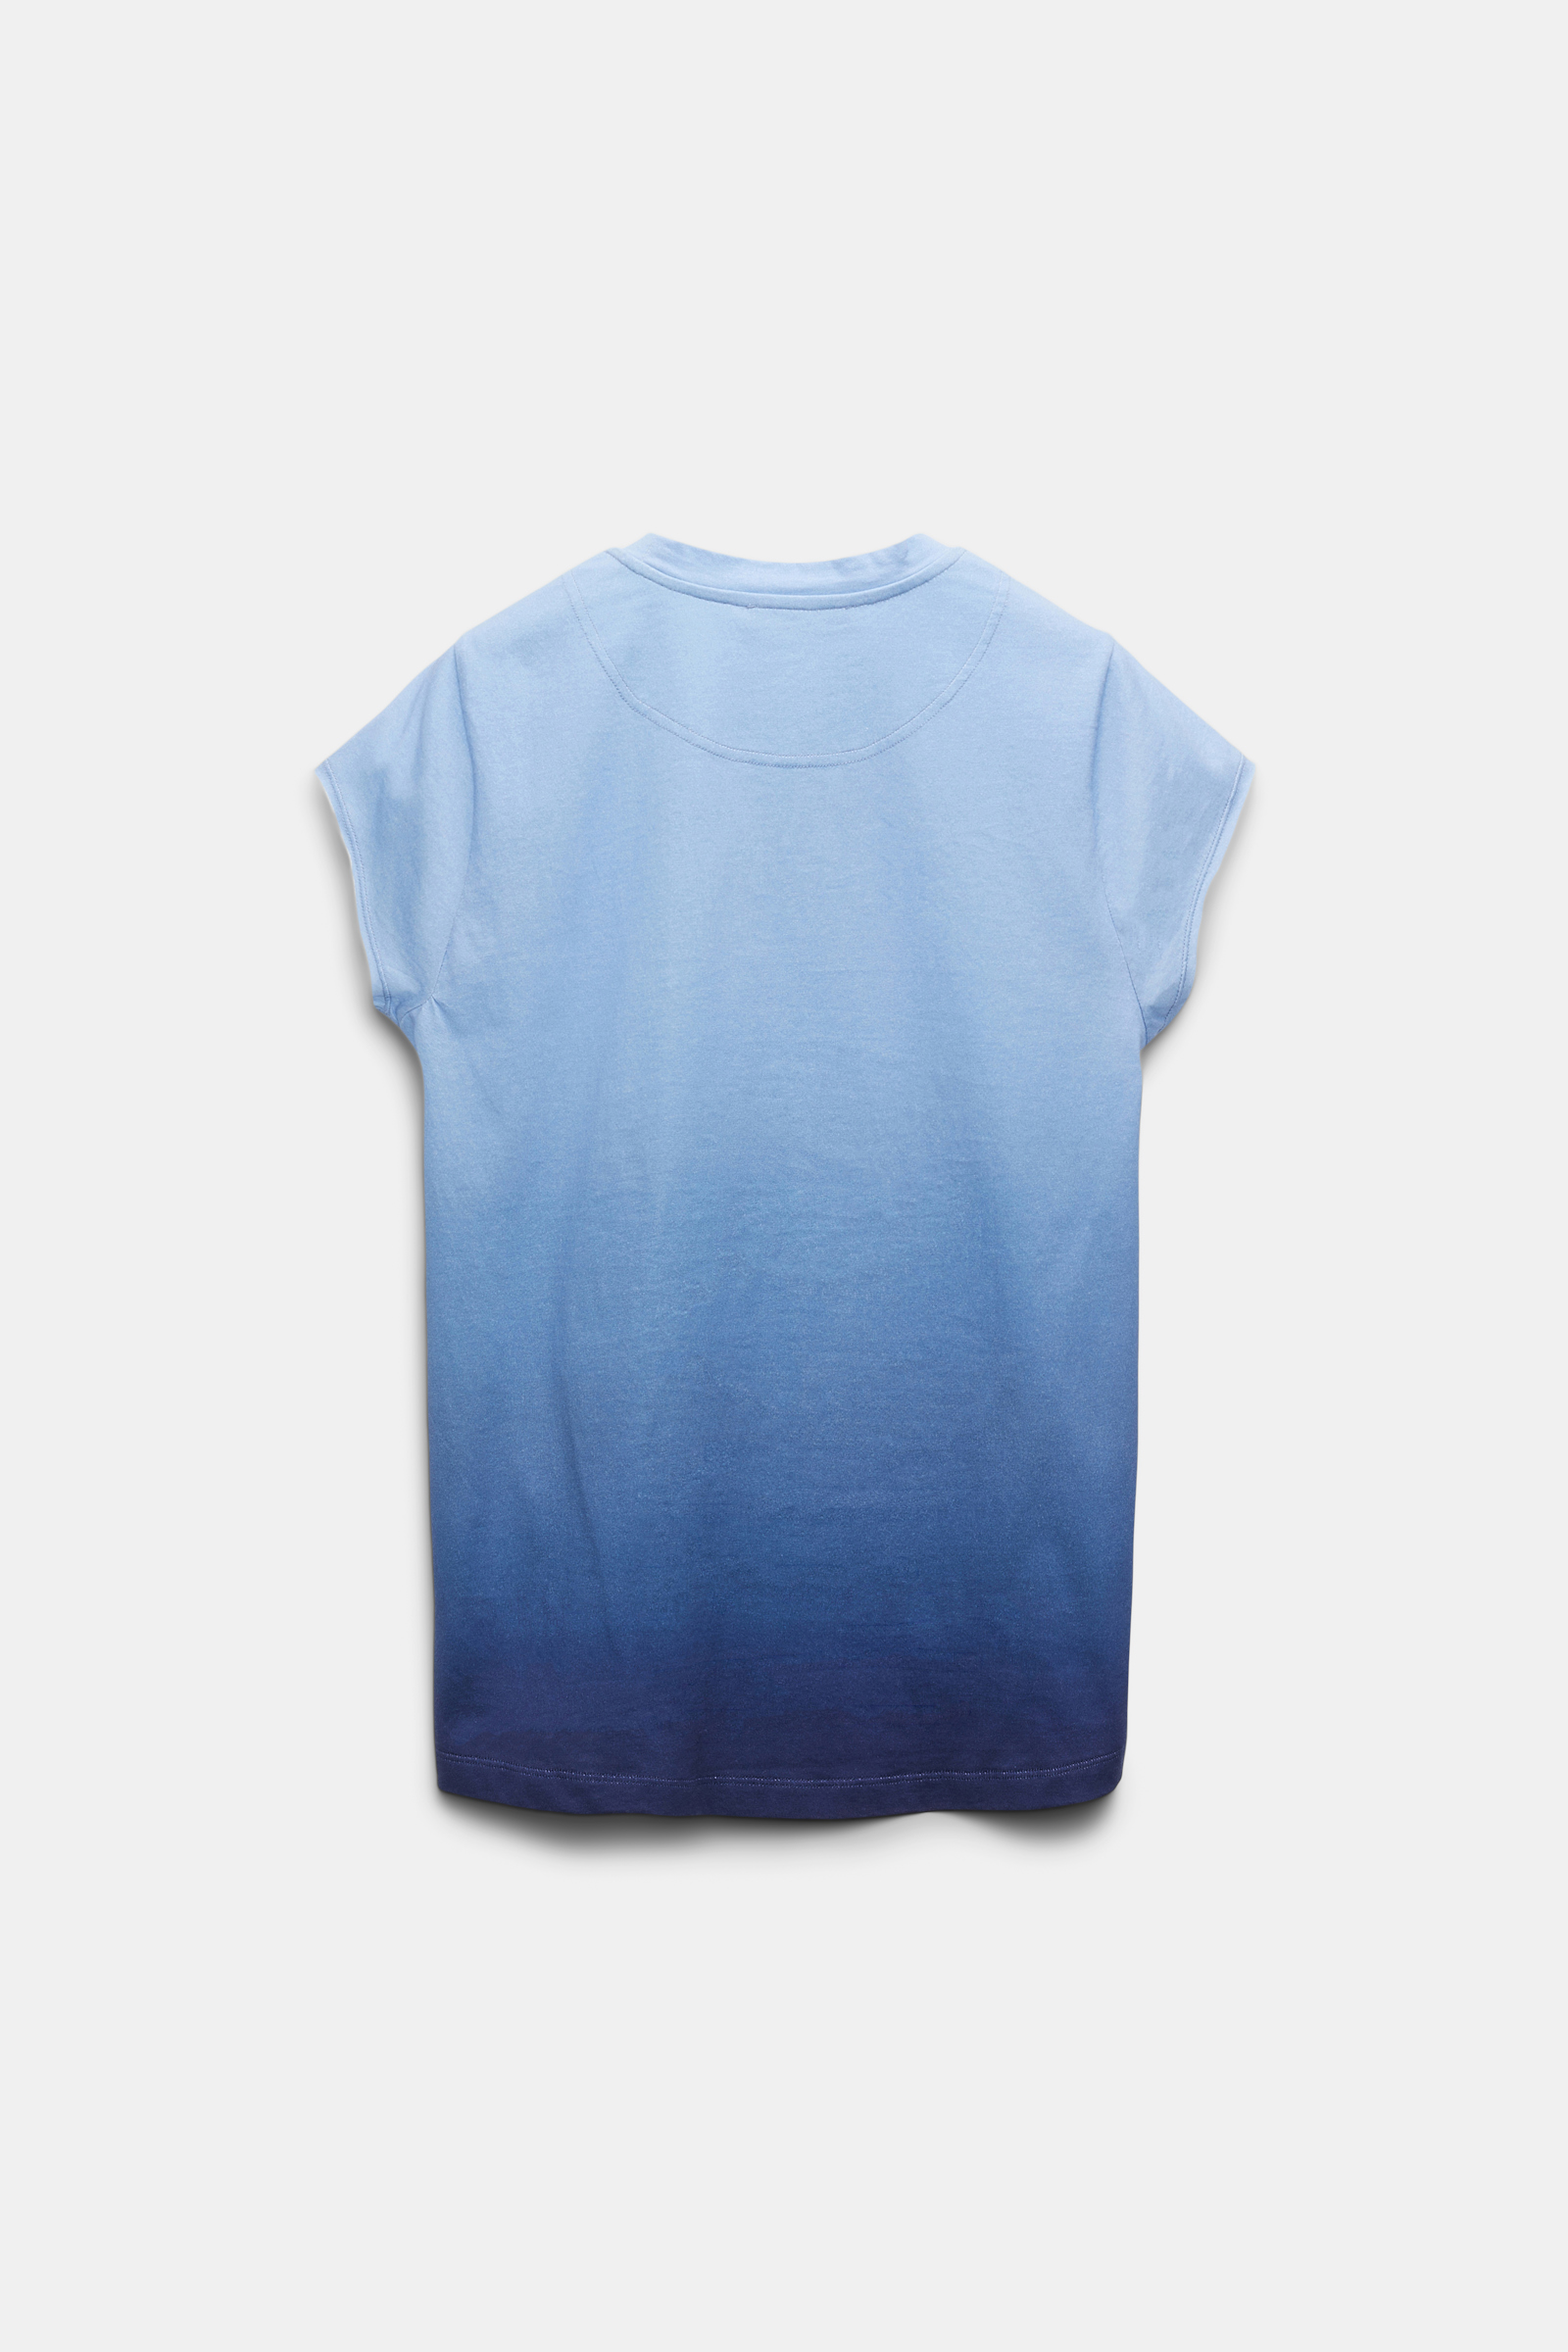 Dorothee Schumacher T-Shirt mit Farbverlauf und RANCH Wording blue mix